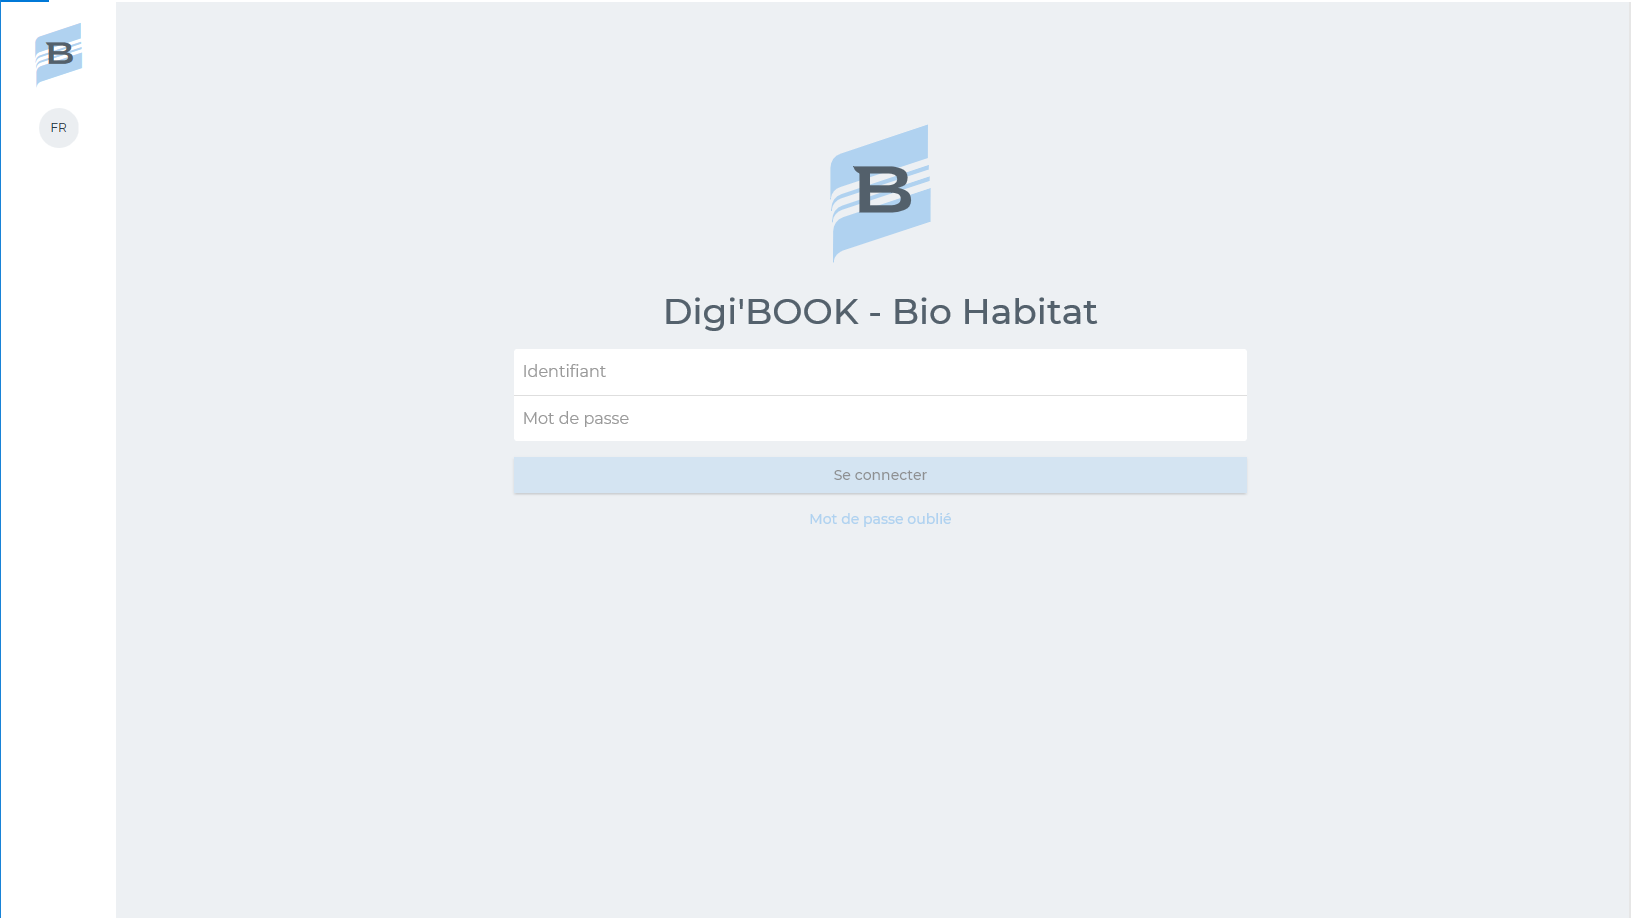 Digi'BOOK - Bio Habitat